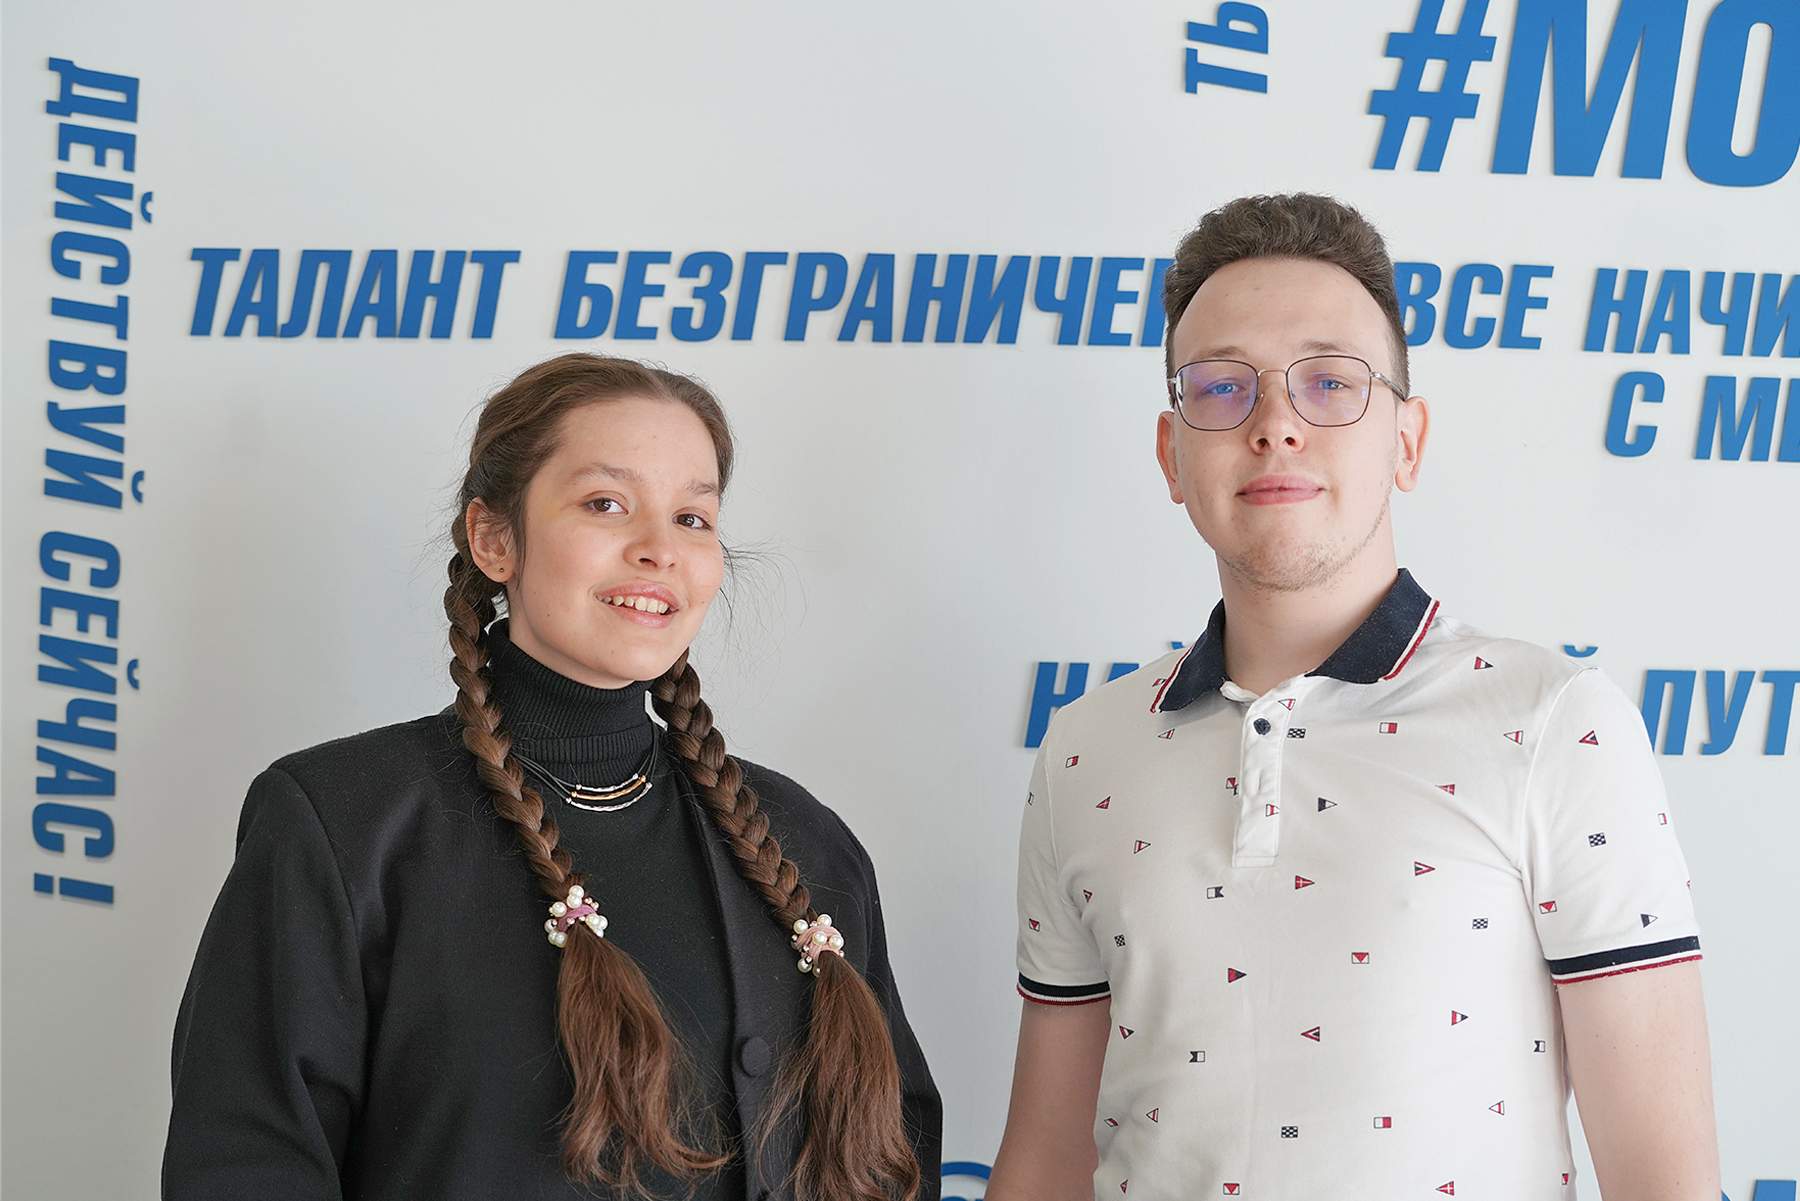 Молодые ученые ВВГУ получили благодарности мэра Владивостока за научные открытия